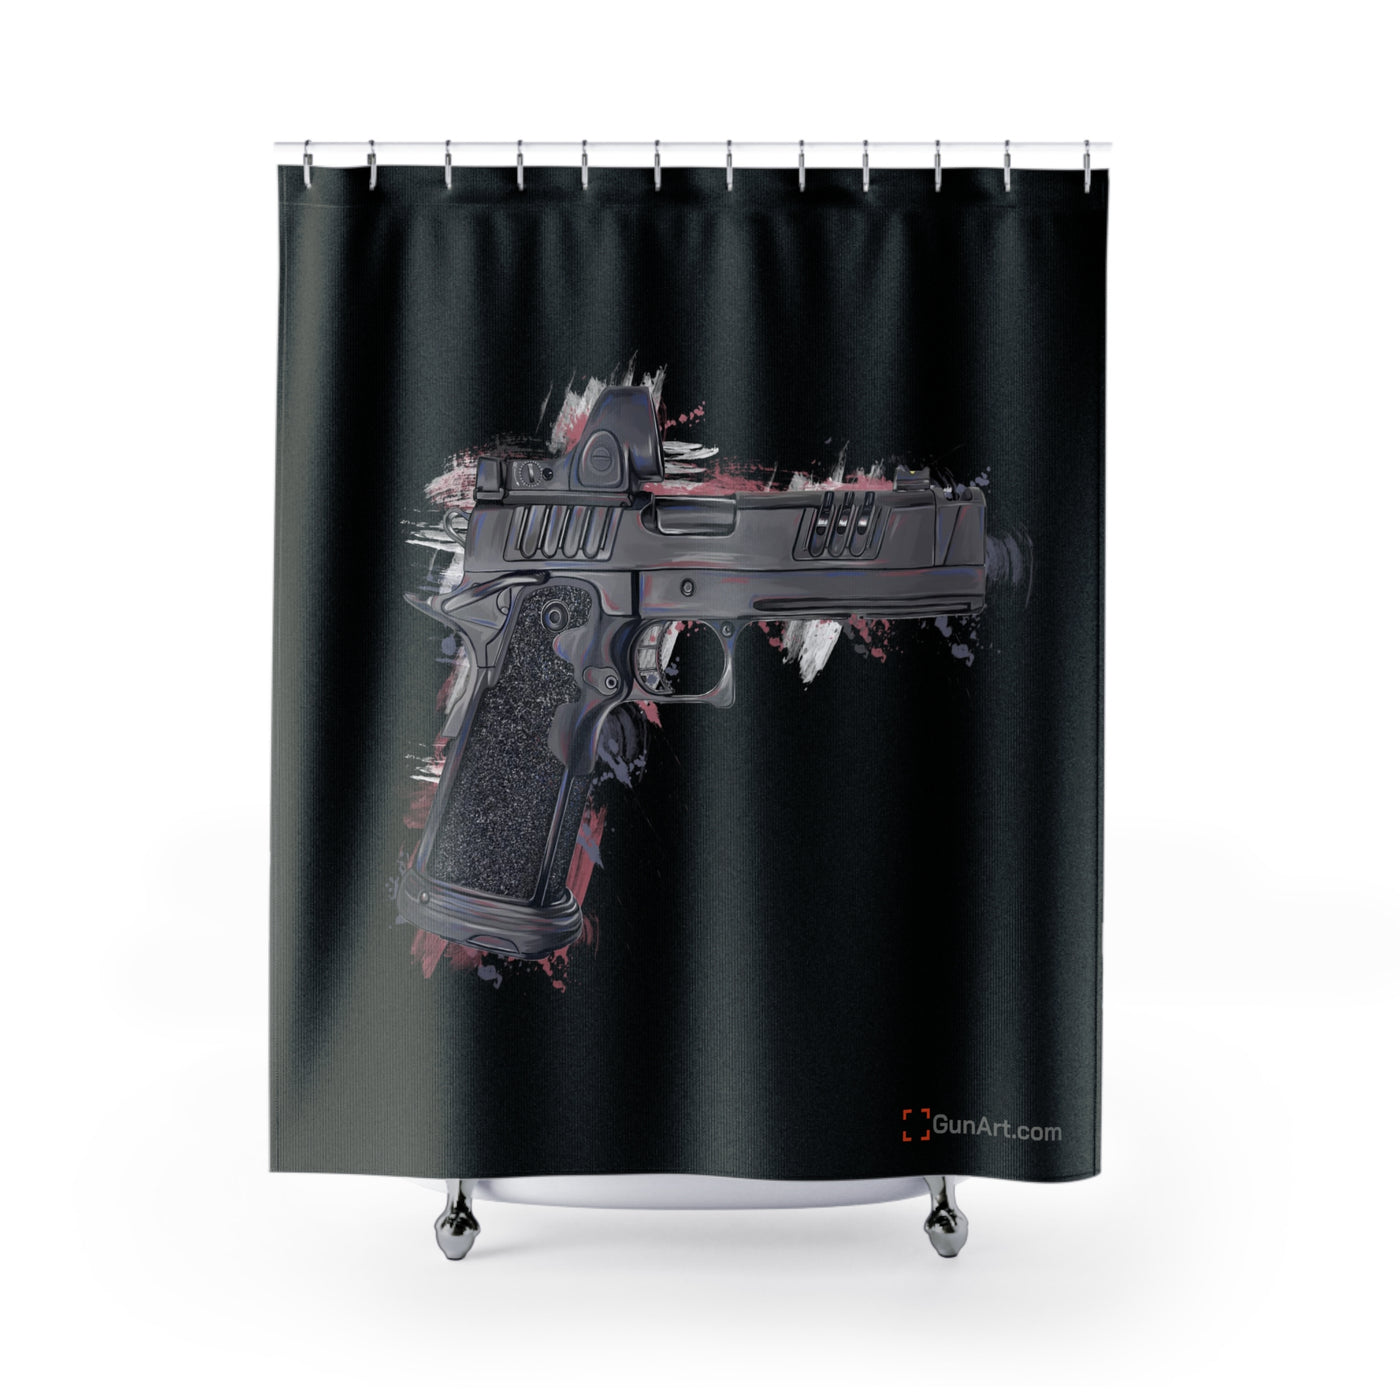 2011 Delta Pistol Shower Curtains - Black Blackground